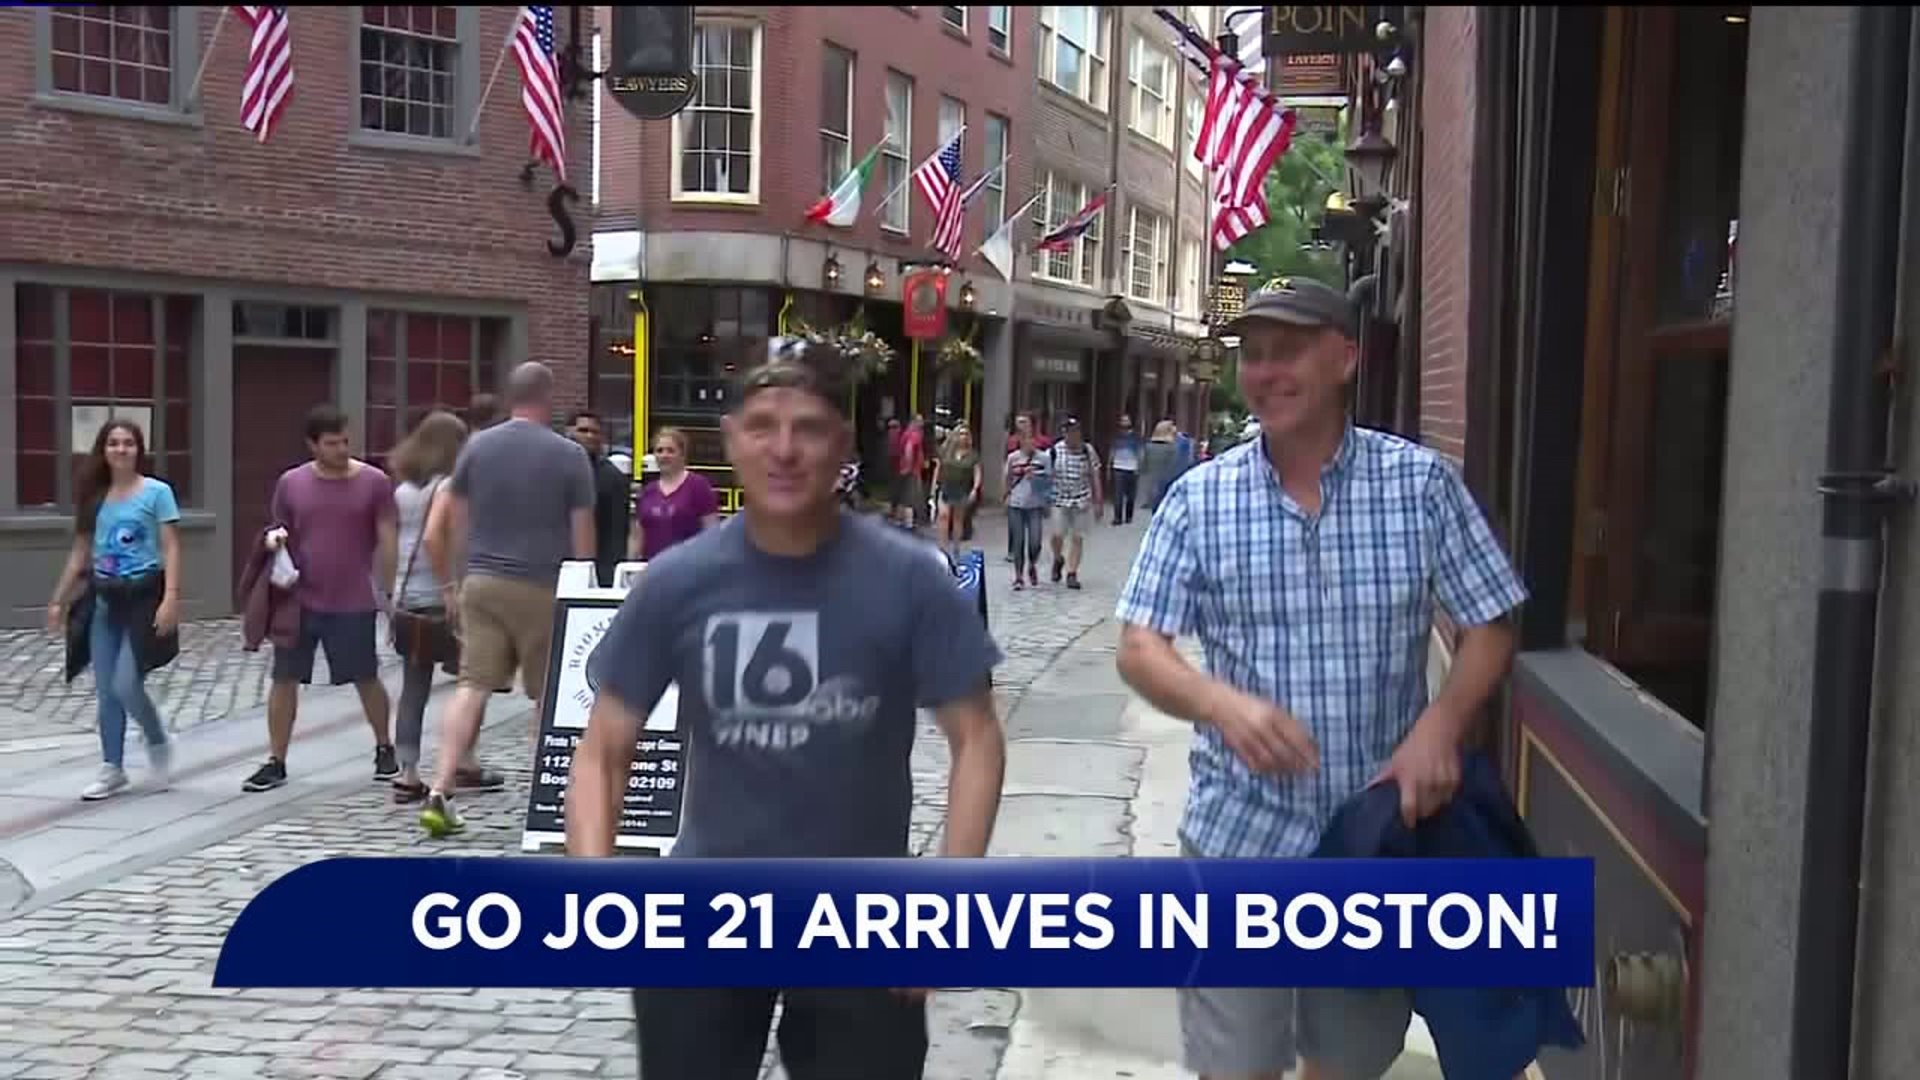 Joe Arrives in Boston for Go Joe 21